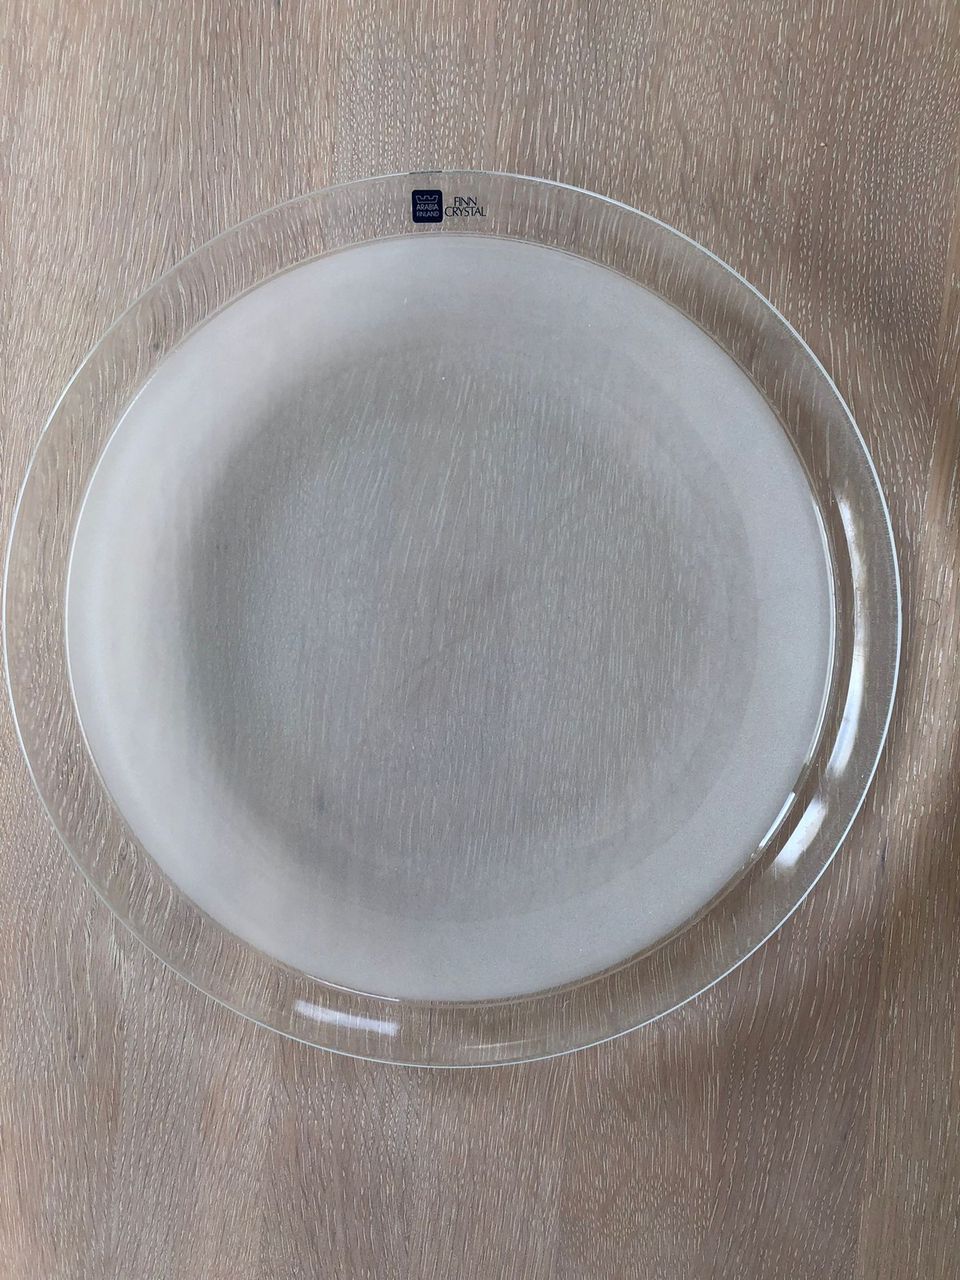 NUUTAJÄRVI Lumikuru-sarjan kristallilasiset ruokalautaset (6 kpl)